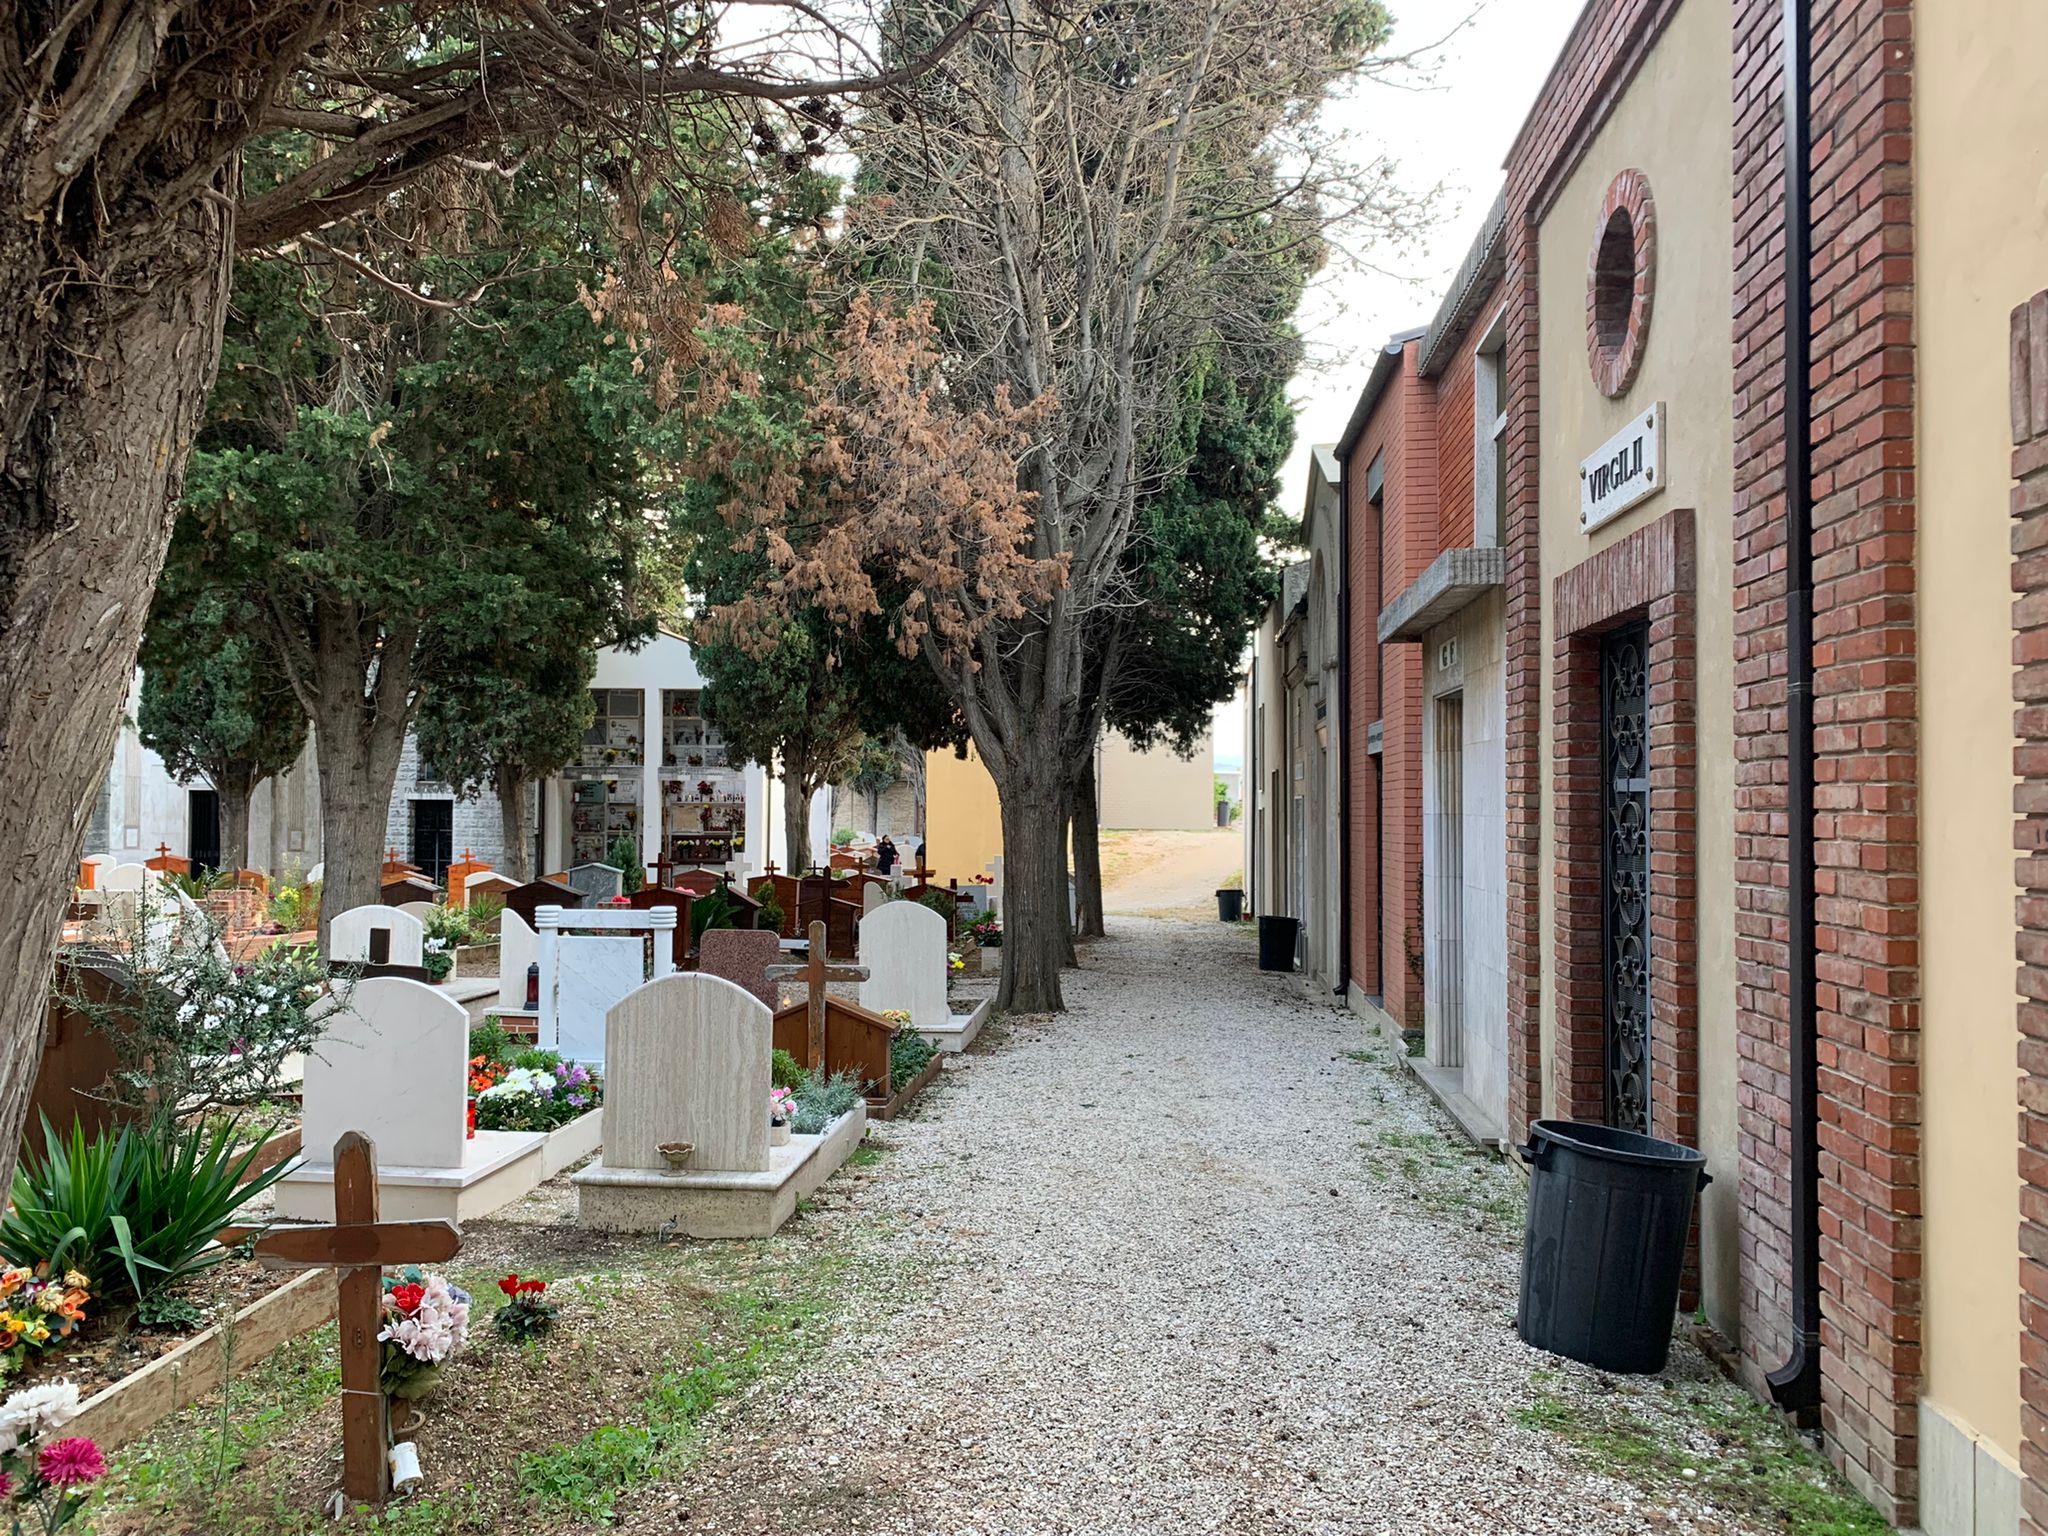 Cimitero_Roseto_capoluogo_dopo_la_pulizia_straordinaria_2.jpeg